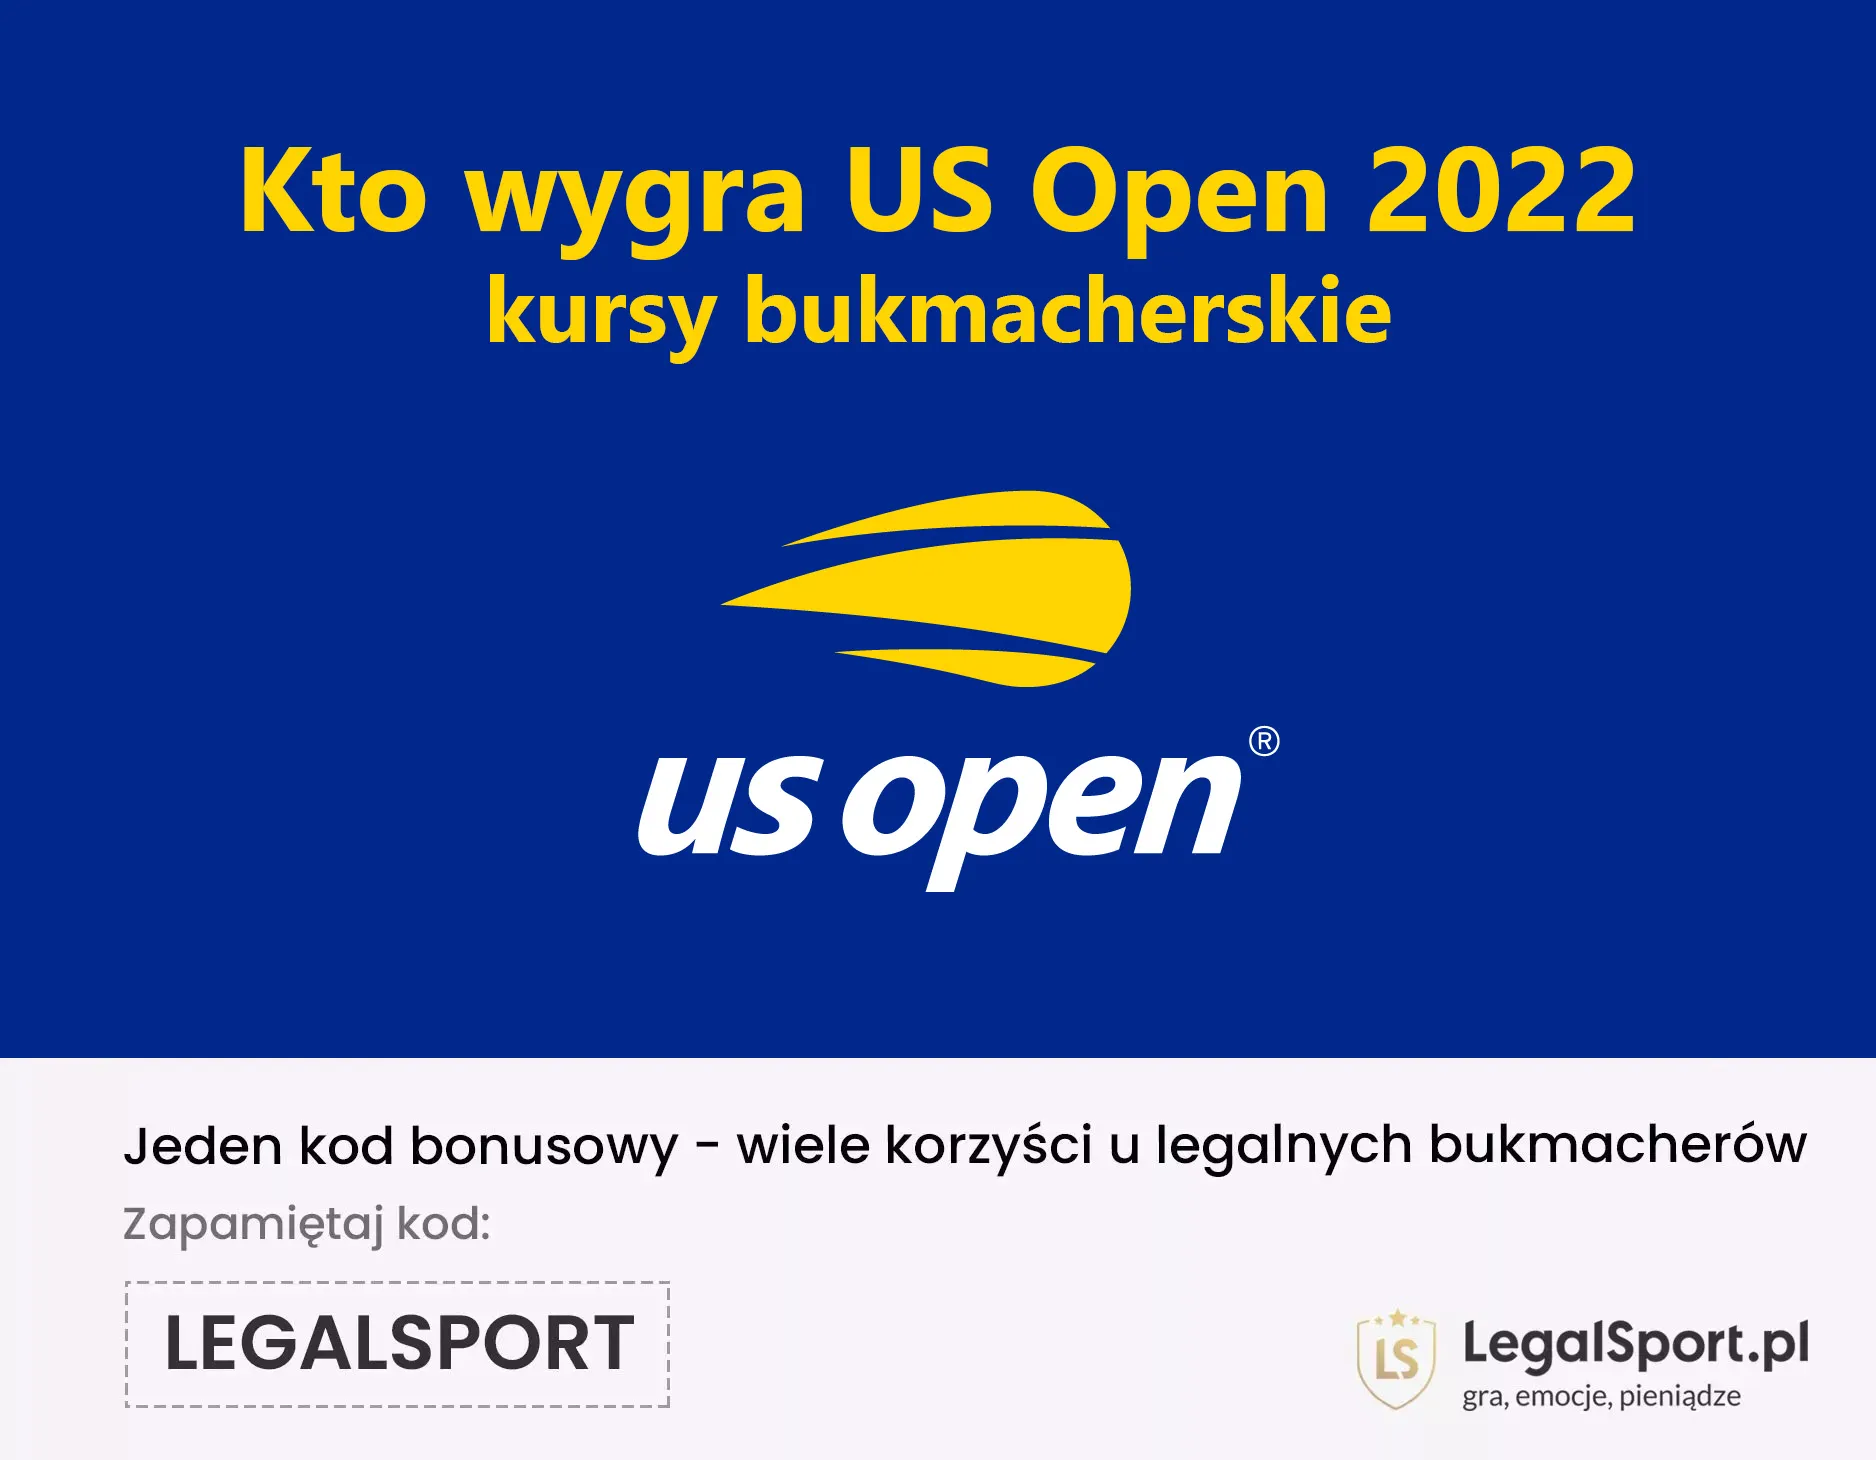 Kto wygra US Open 2022 - kursy bukmacherskie na faworytów